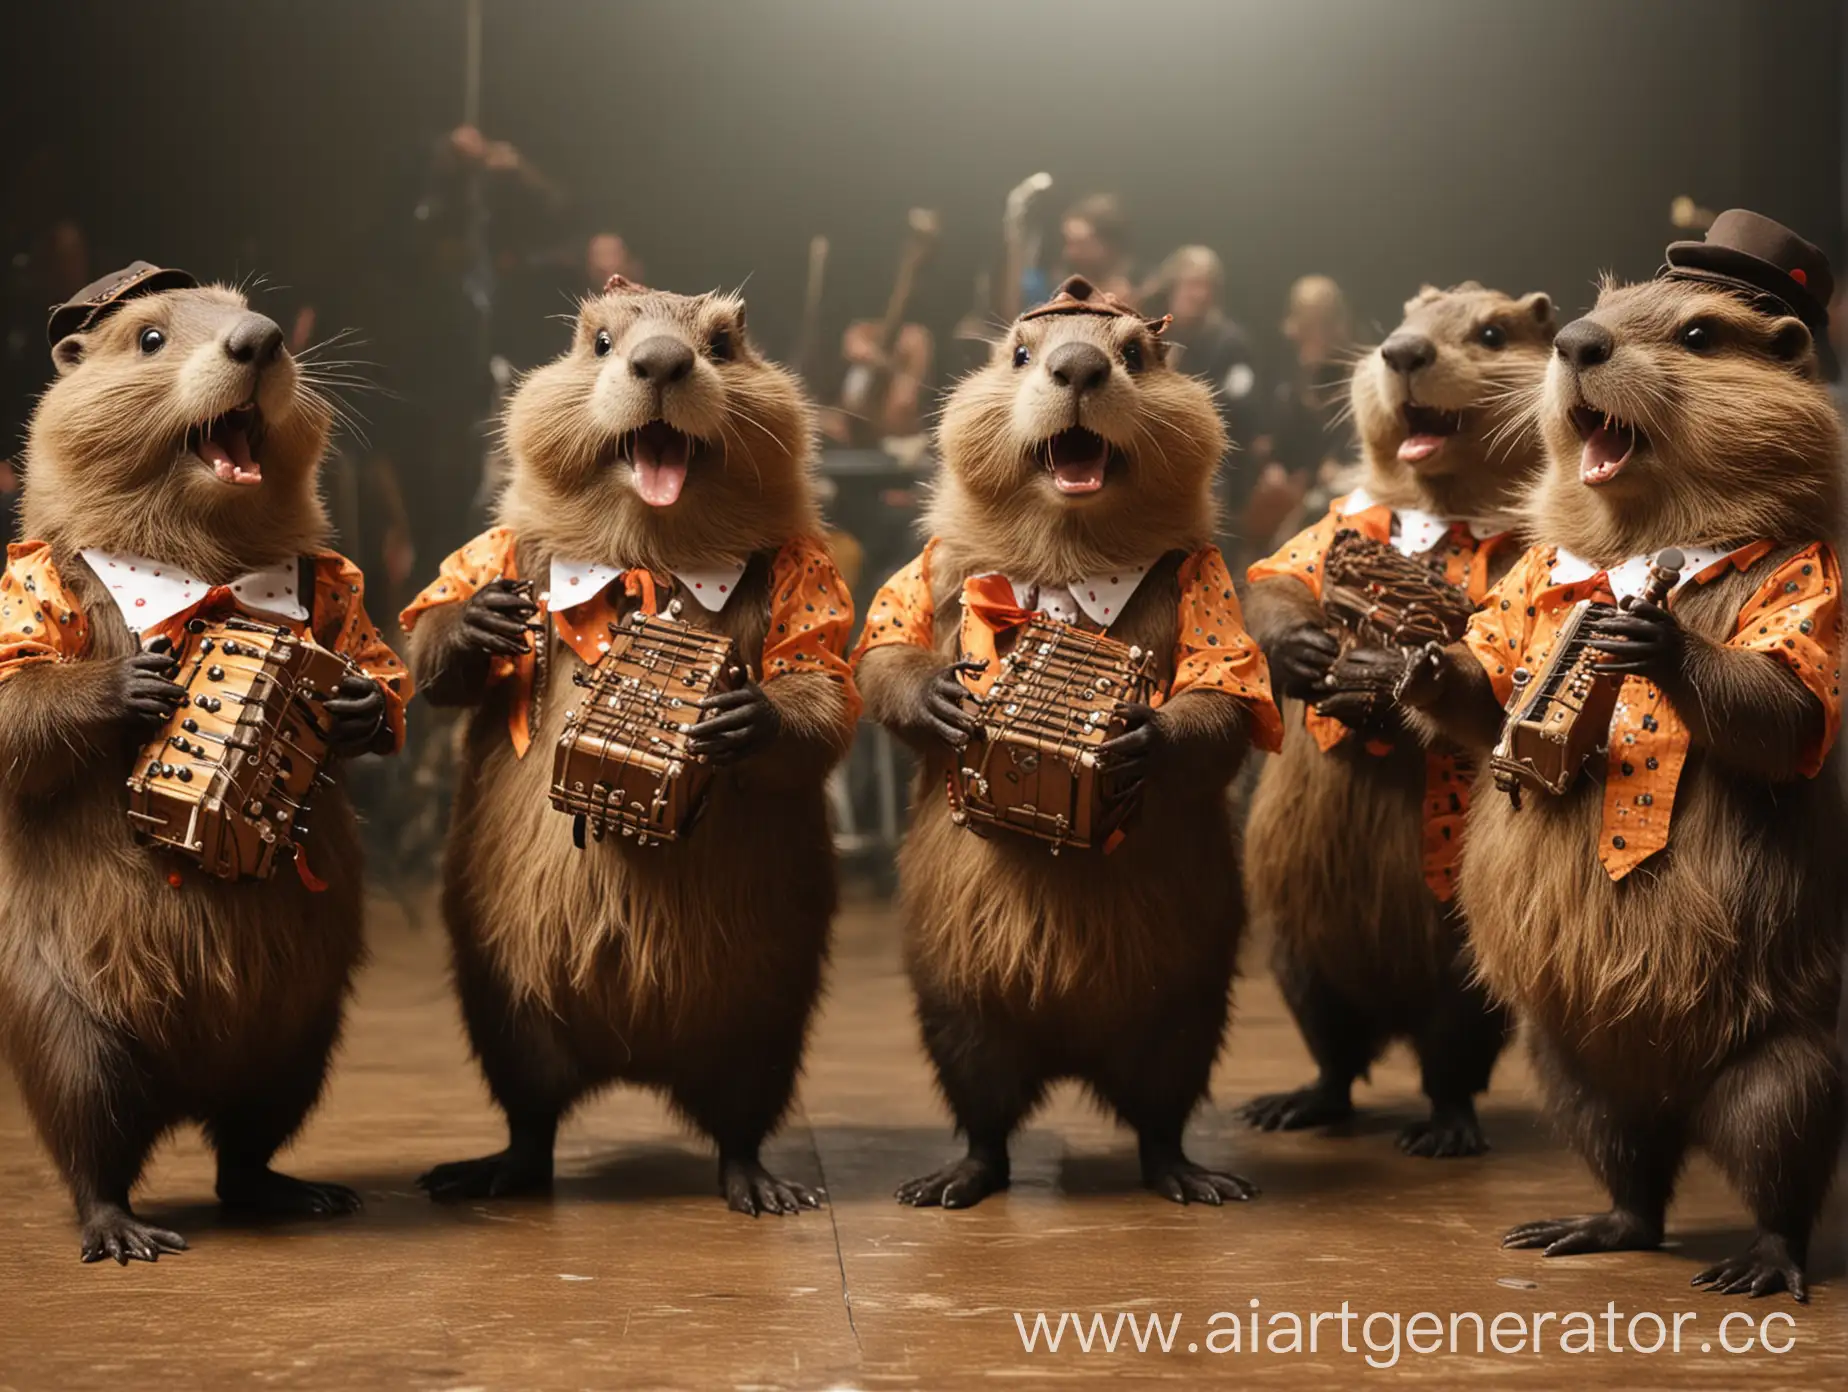 BeaverHeaded-Beavers-Dancing-Polka-at-Concert